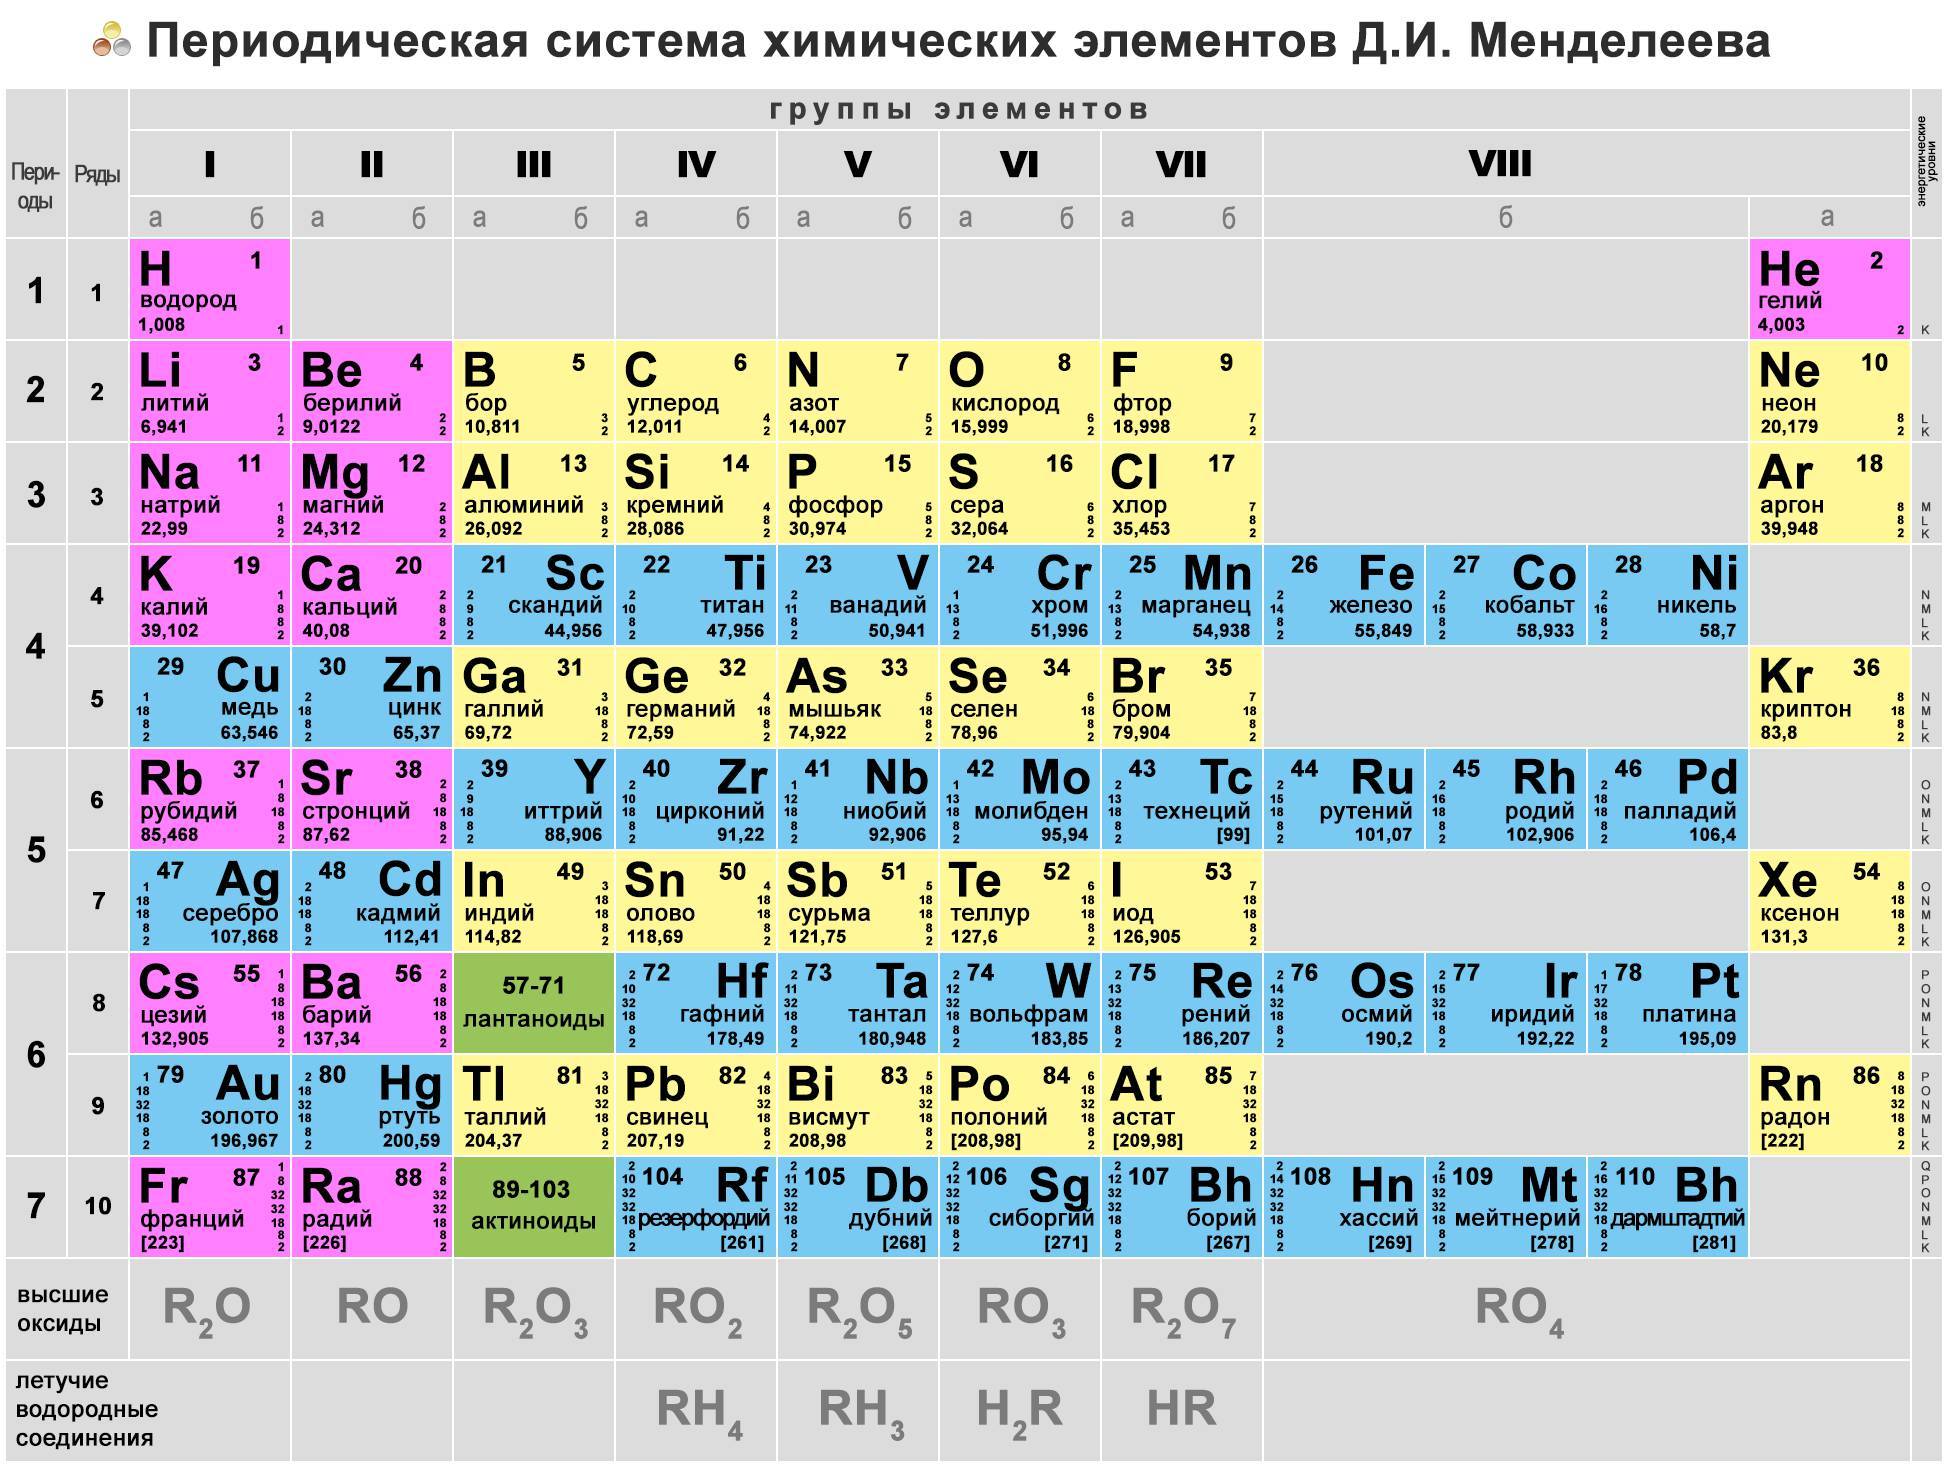 Zn ki. Химическая периодическая таблица Менделеева. Менделеев периодическая таблица химических элементов. Из чего состоит периодическая таблица Менделеева. Первые 20 элементов таблицы Менделеева.